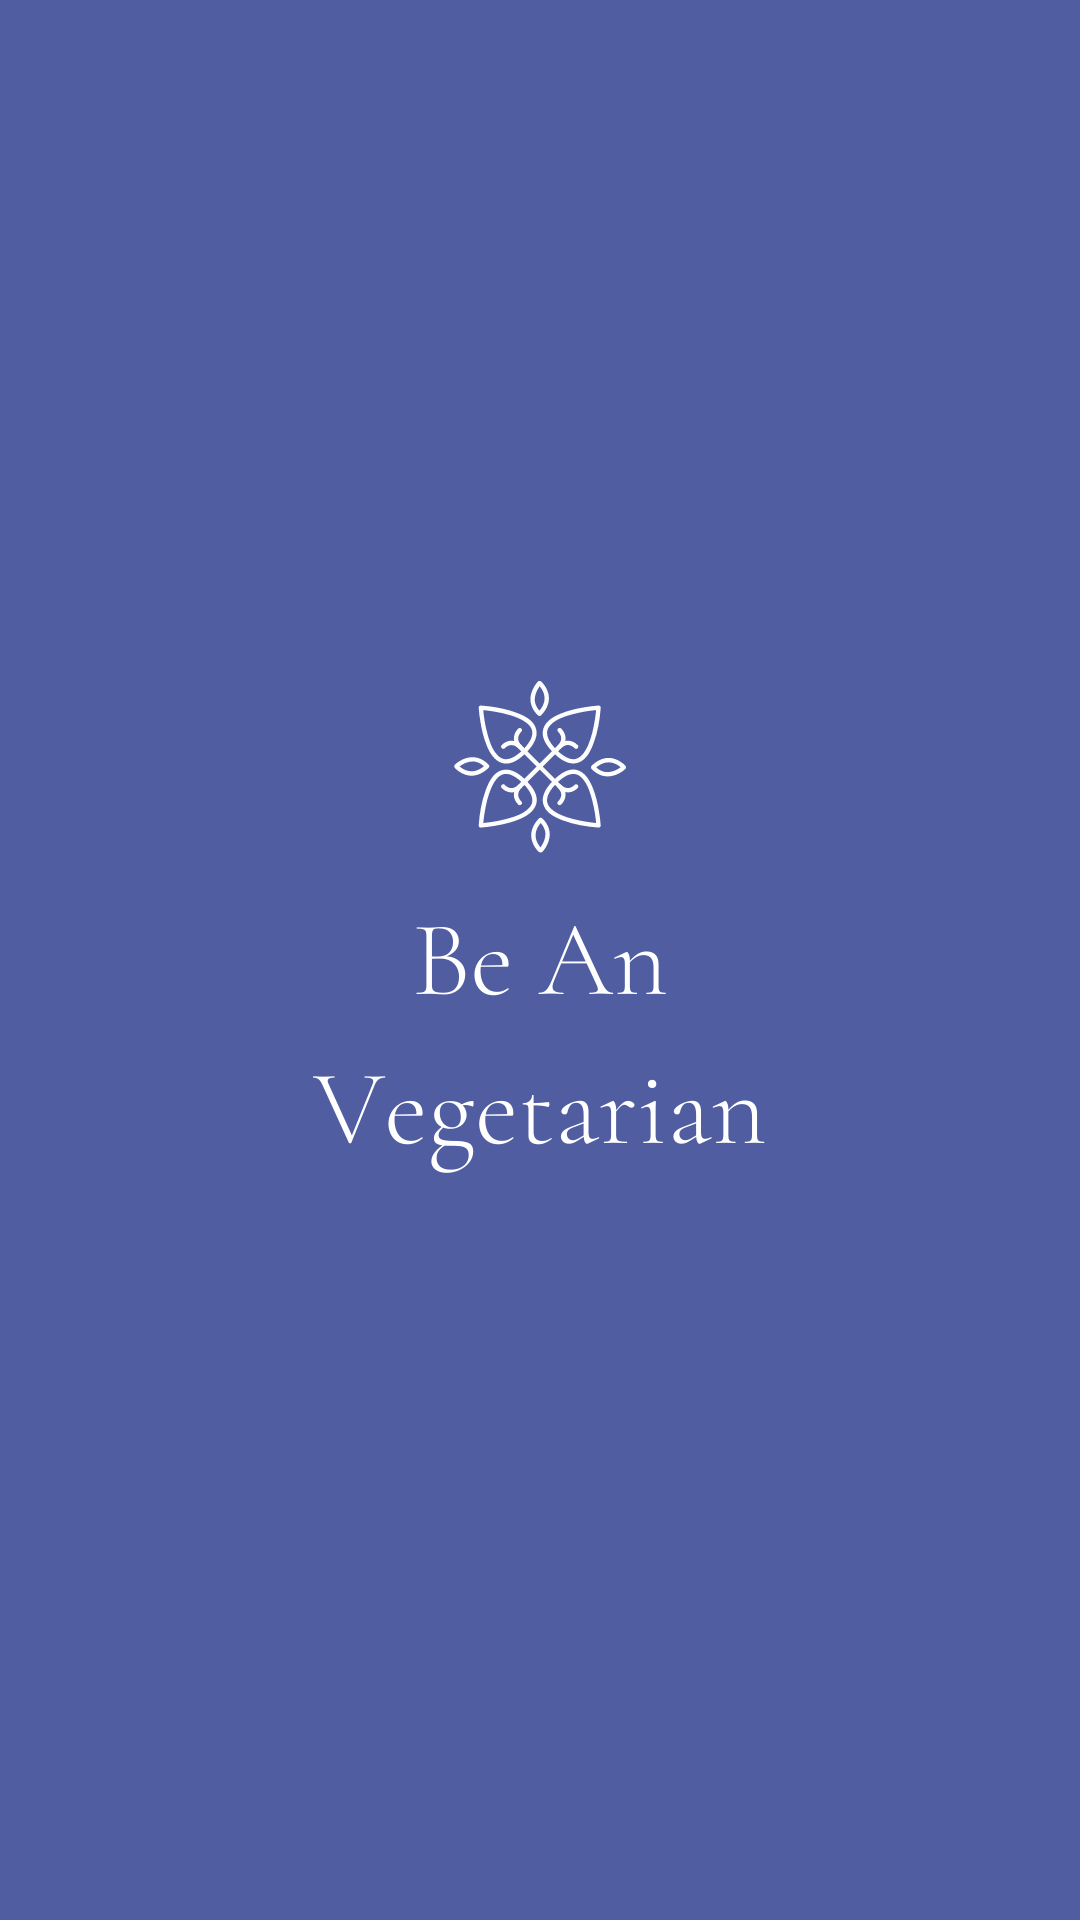 Be an vegetarian